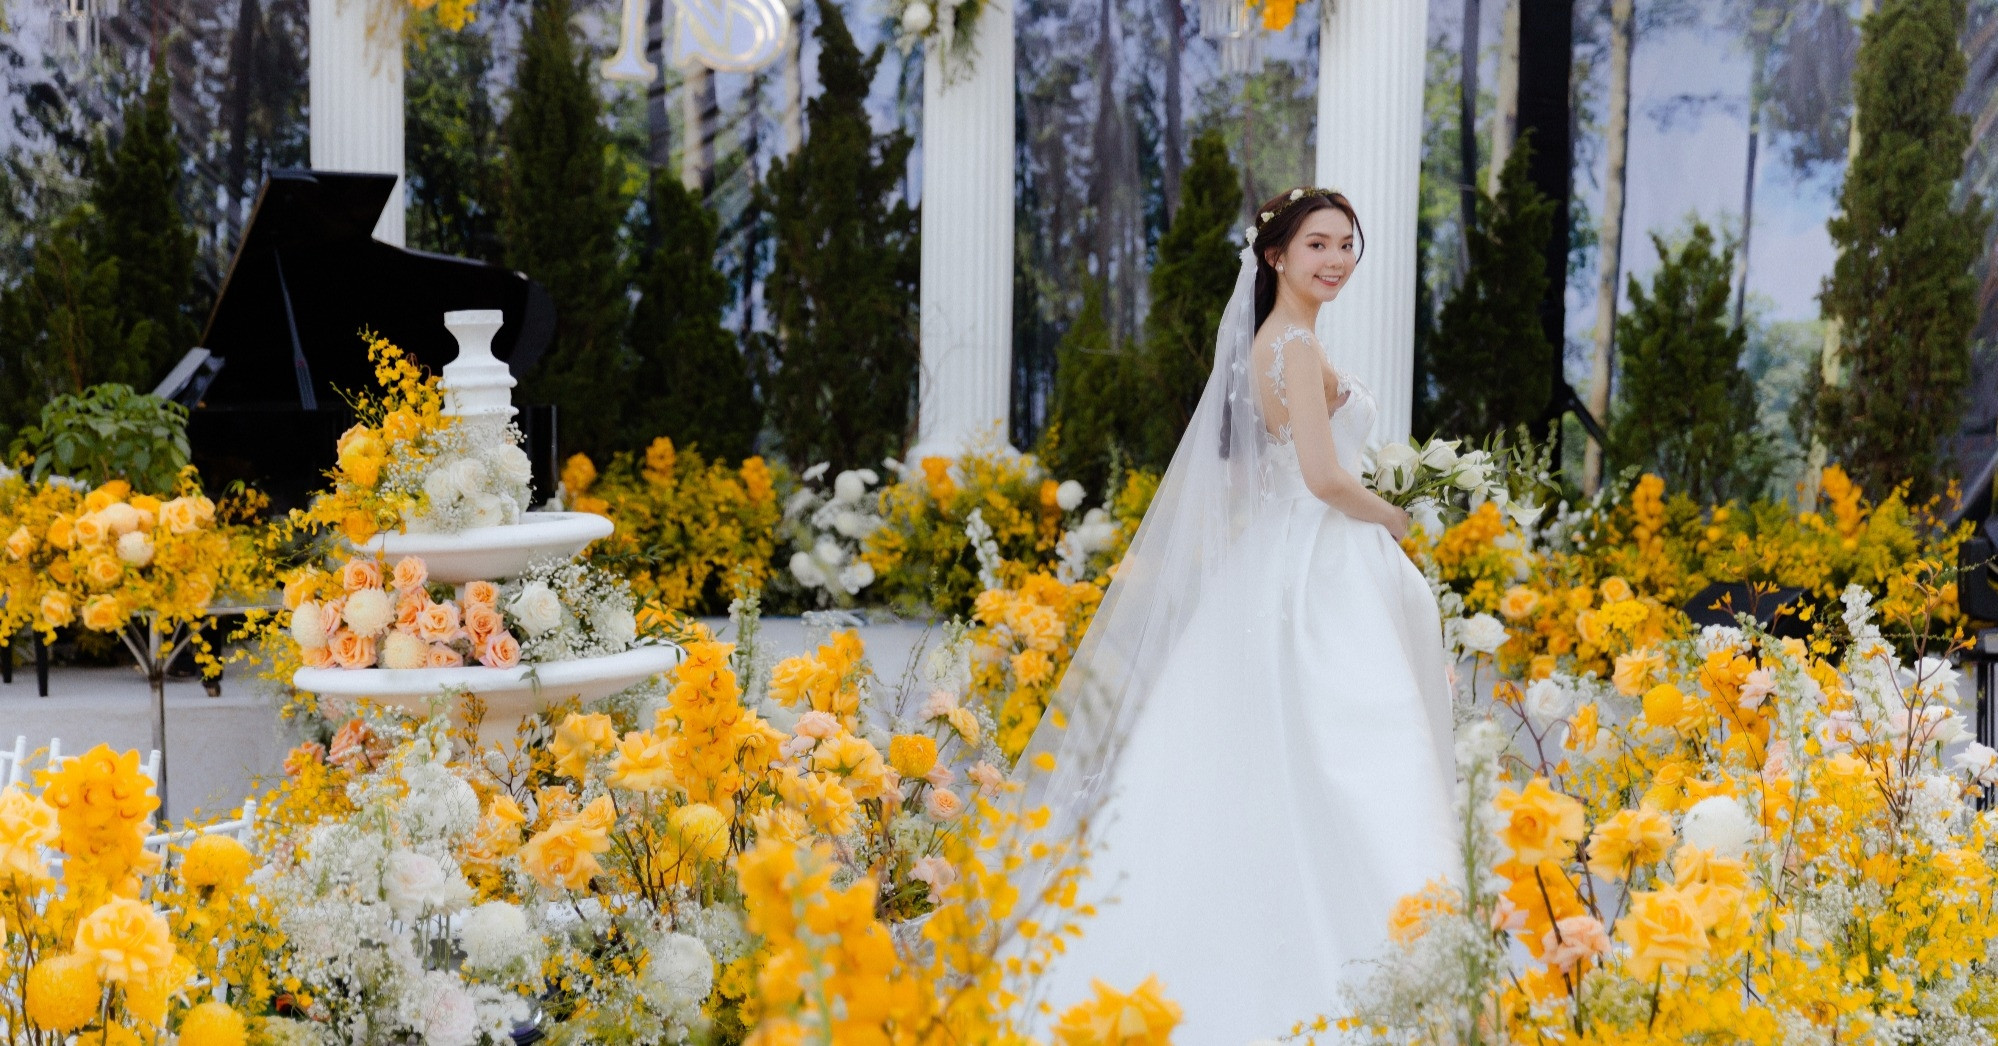 เจ้าสาวเกียงรักการท่องเที่ยว เปลี่ยนสวนของพ่อให้เป็นสถานที่จัดงานแต่งงานสุดยิ่งใหญ่